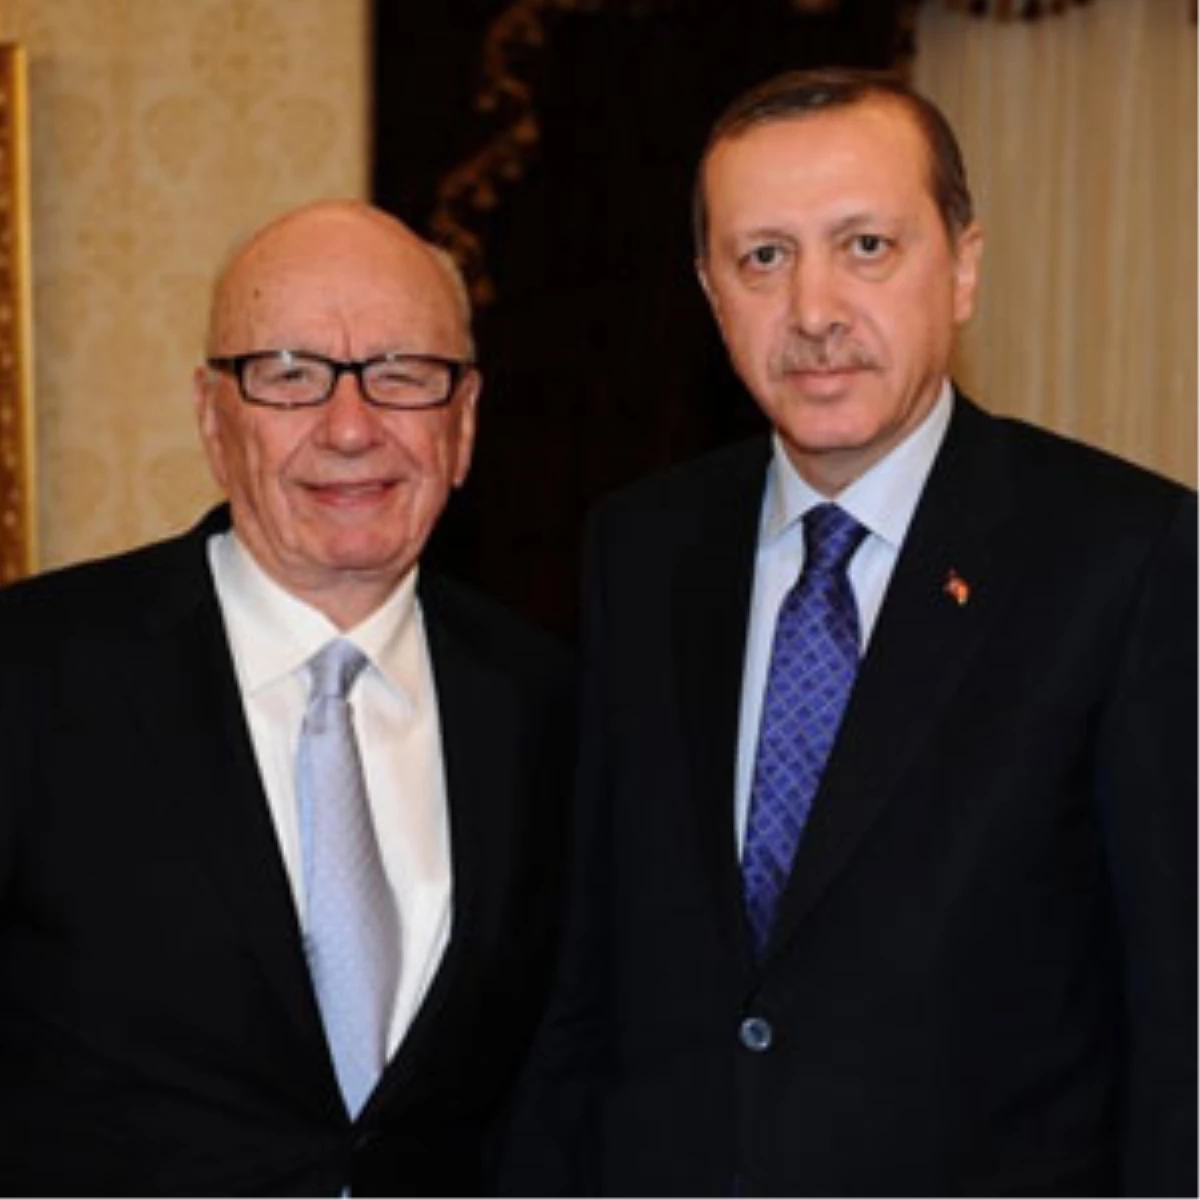 Başbakan Erdoğan, Rupert Murdoch ile Görüştü